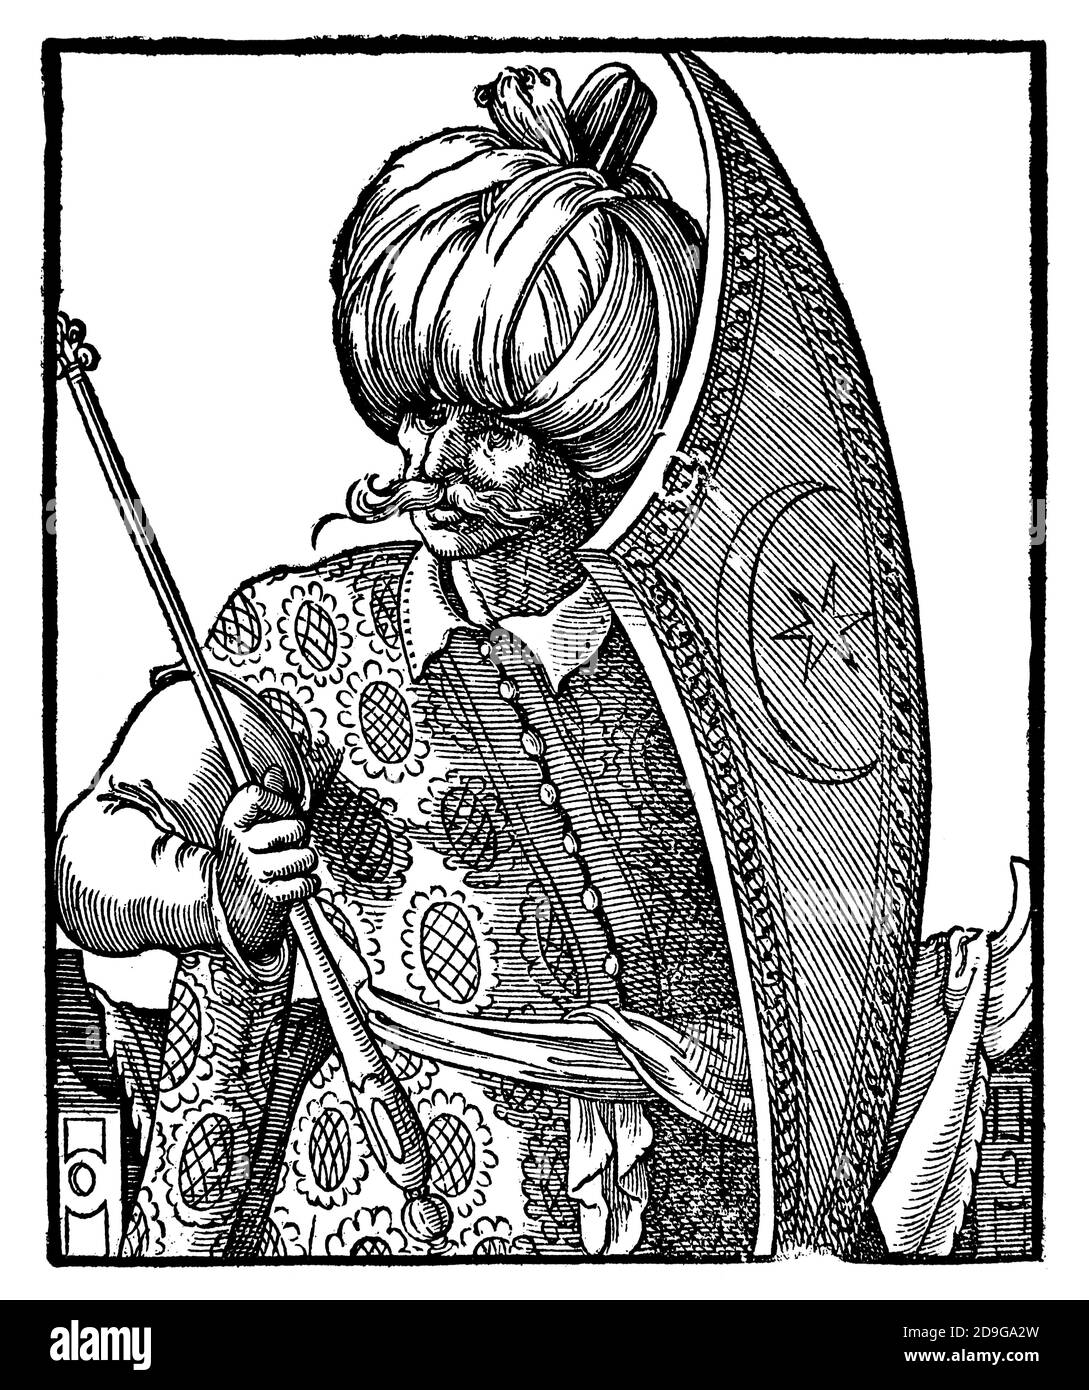 Moderne Zeit. Osmanisches Reich. 16. Jahrhundert. Turk mit Schild und Zepter. Stich von Jost Amman, 16. Jahrhundert. Stockfoto